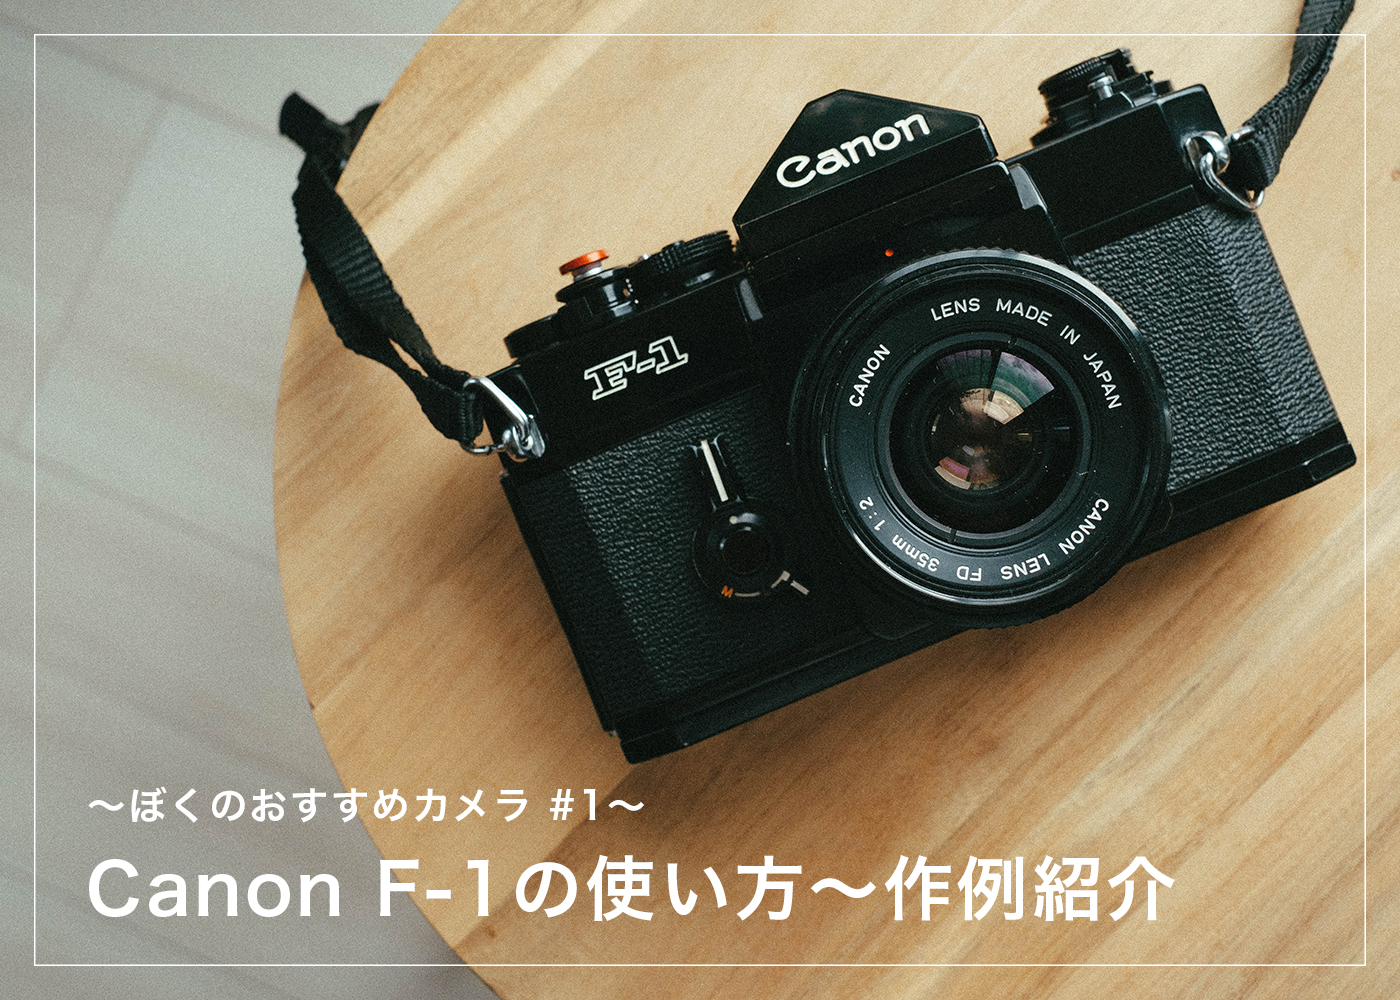 ぼくのおすすめカメラ。Canon F-1の使い方〜作例紹介